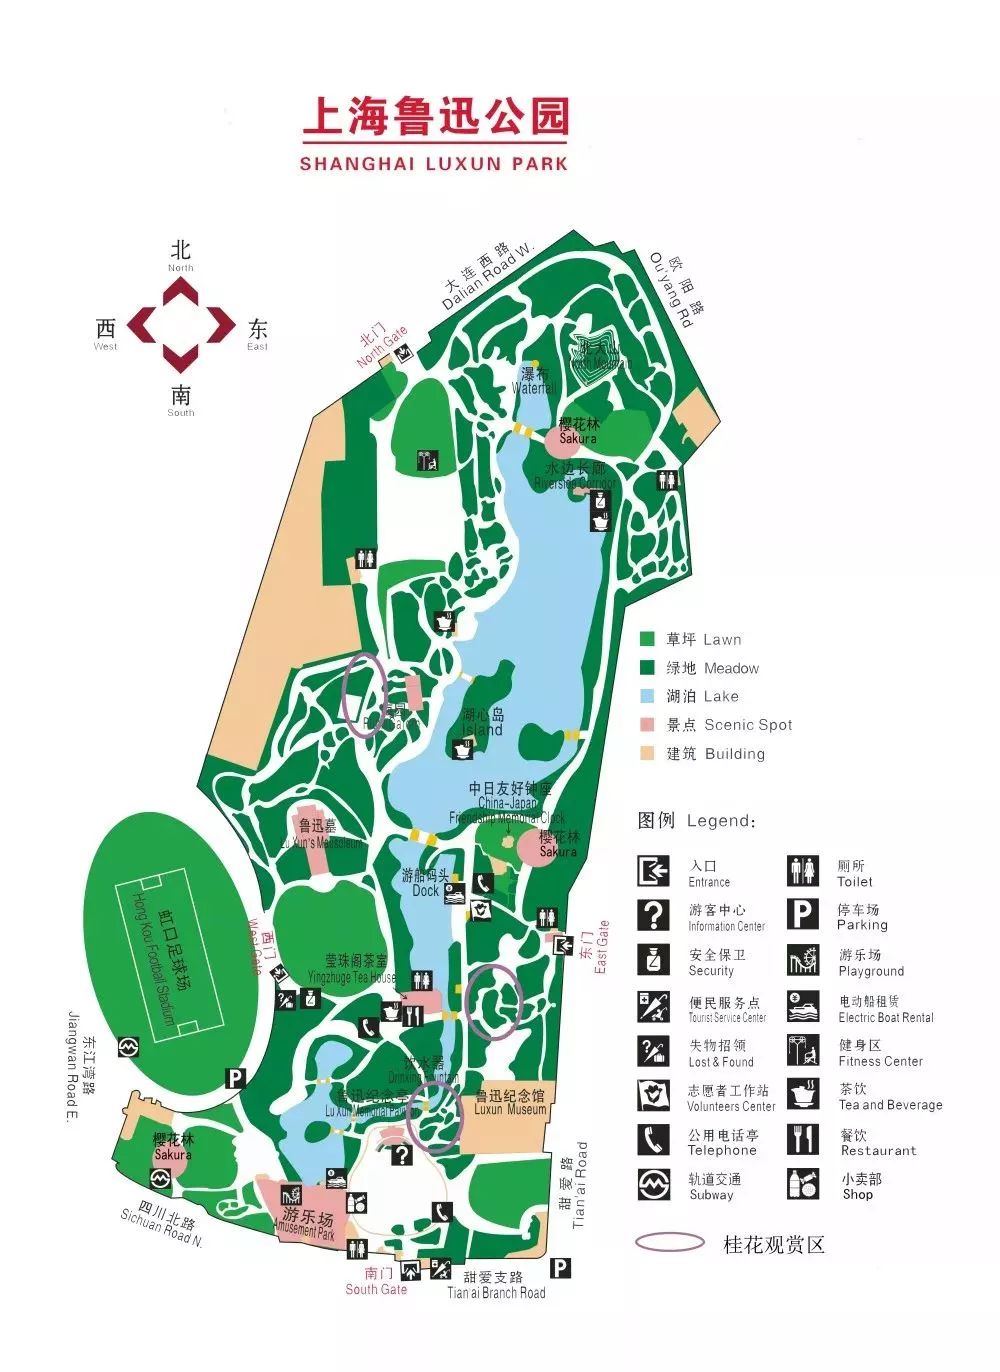 鲁迅公园全园分布着近800株桂花,主要分布在松竹梅广场,荷花池畔,鲁迅